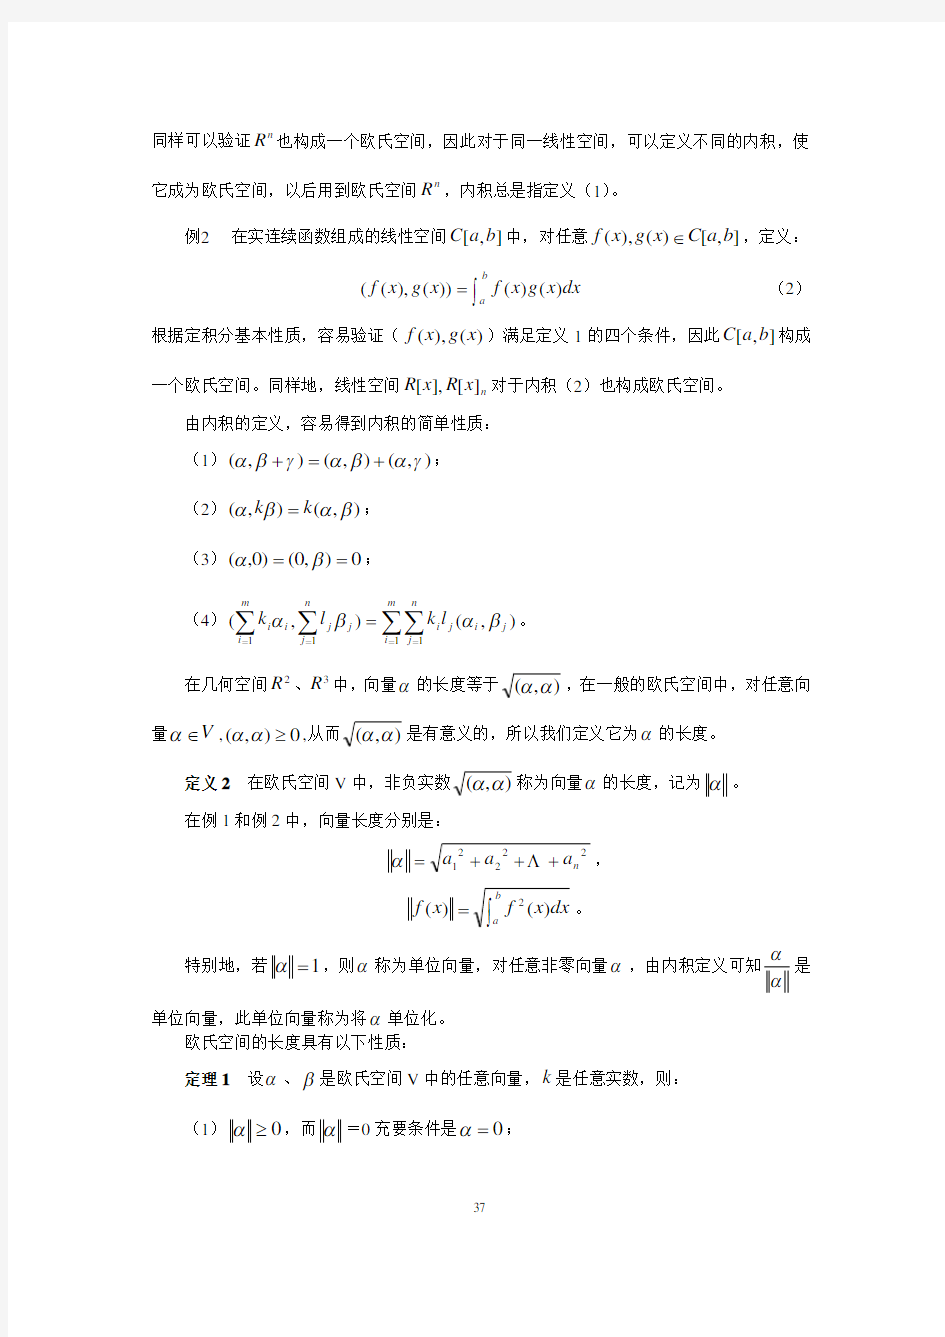 南京工业大学矩阵论第三章讲义 ch3